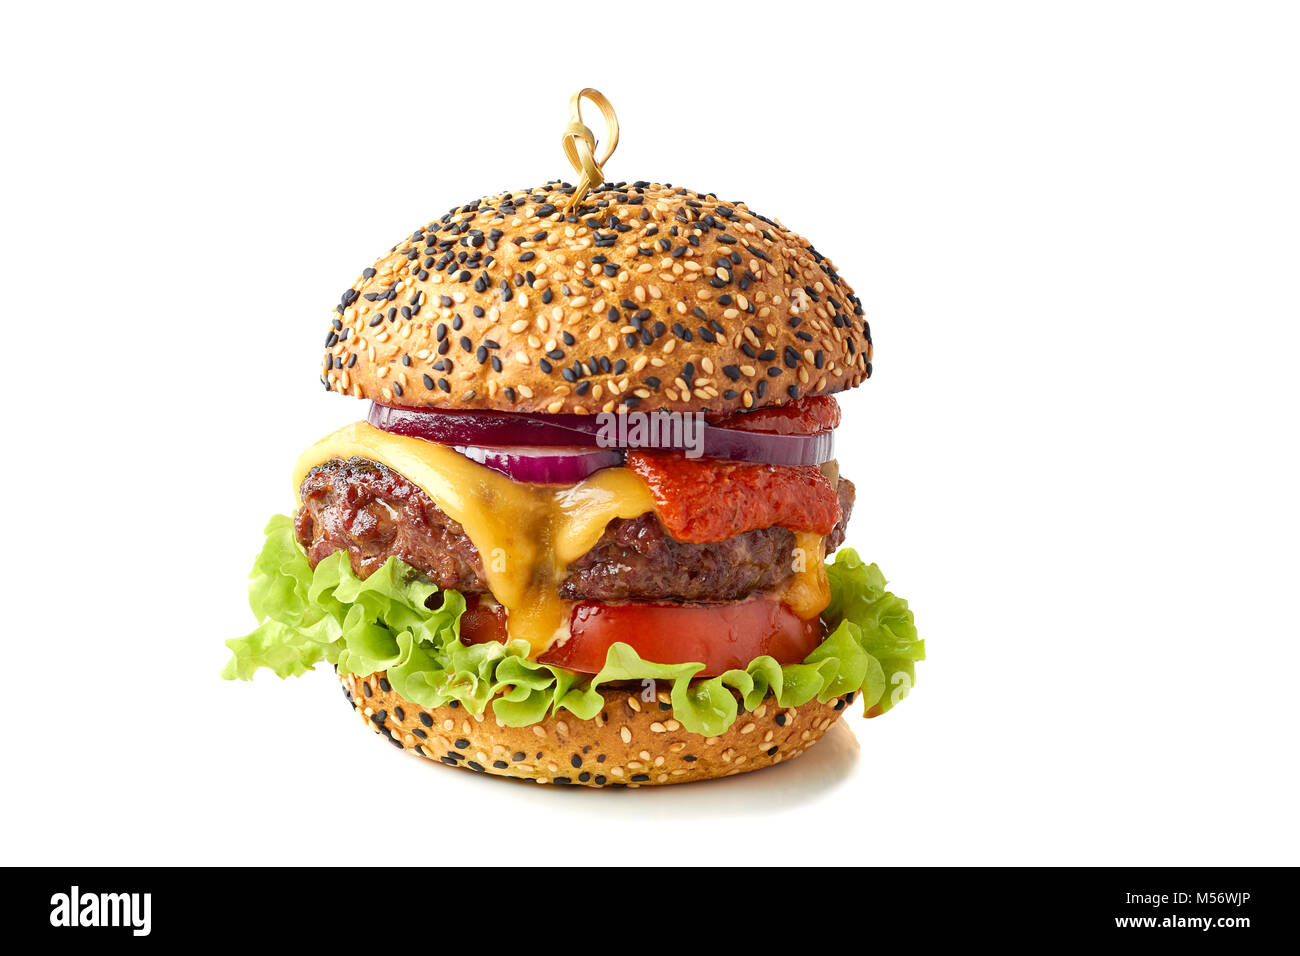 Tasty cheeseburger on white Stock Photo